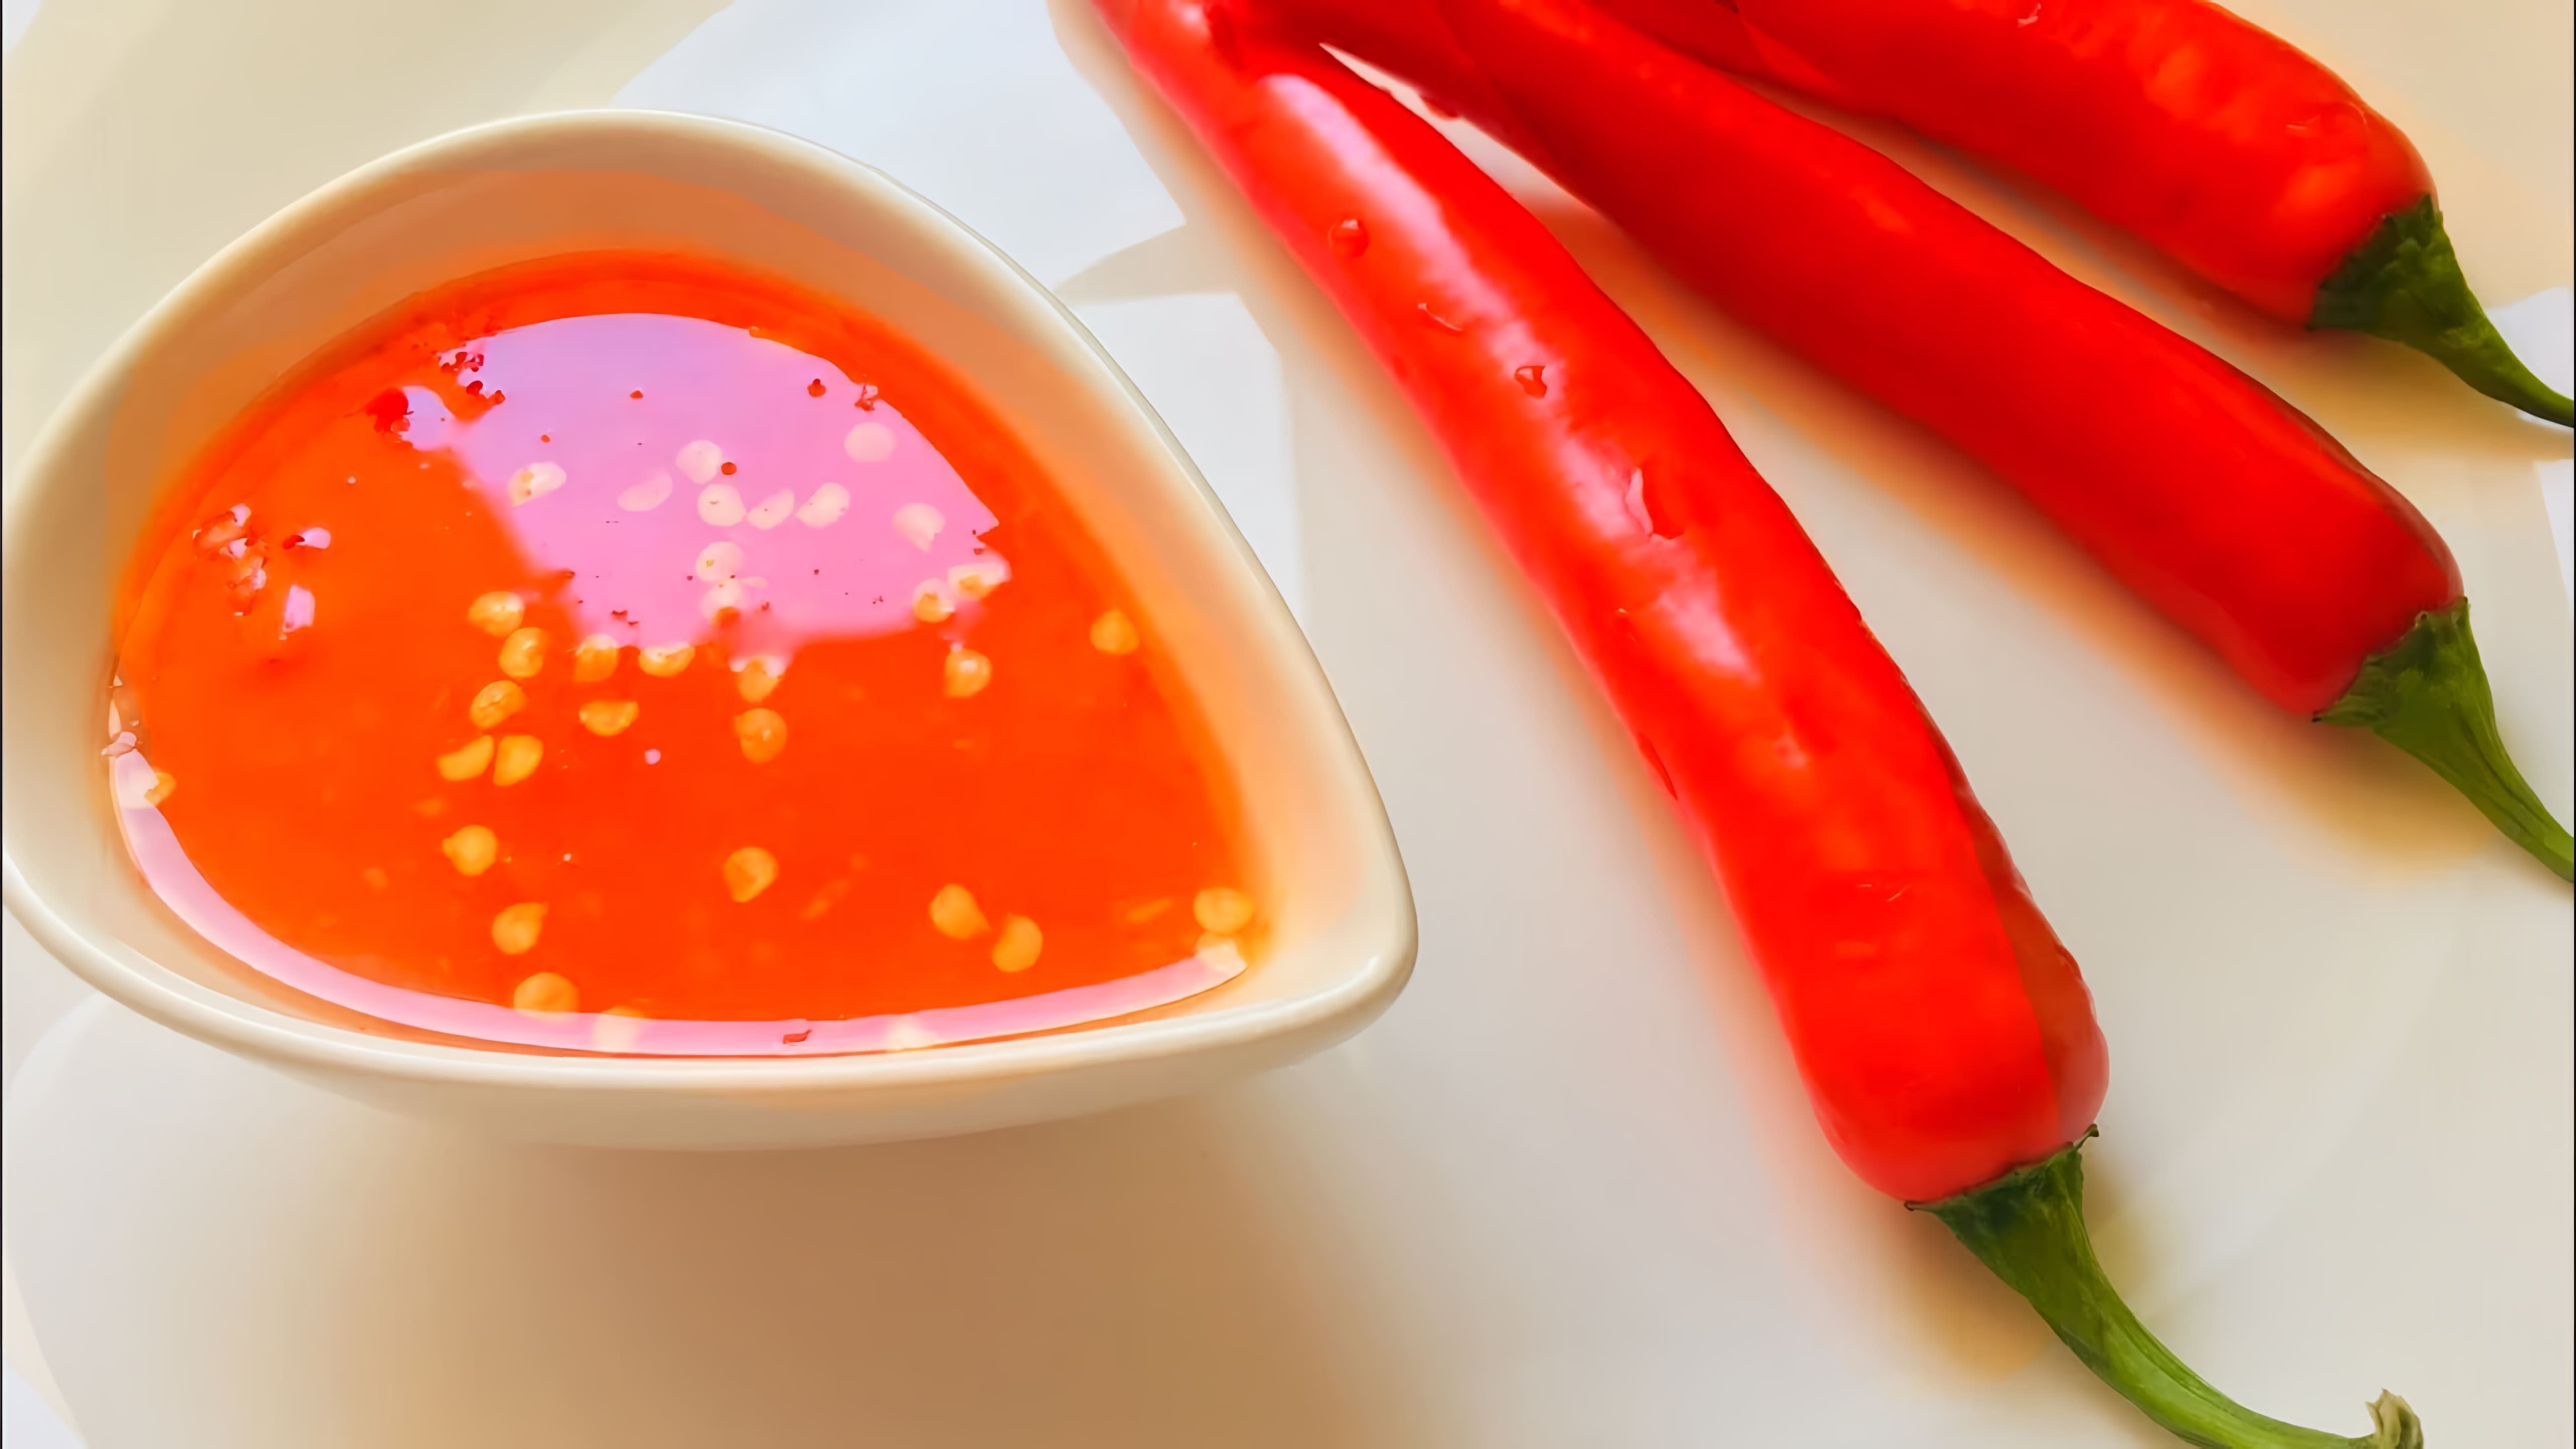 В этом видео демонстрируется процесс приготовления остро-сладкого тайского соуса